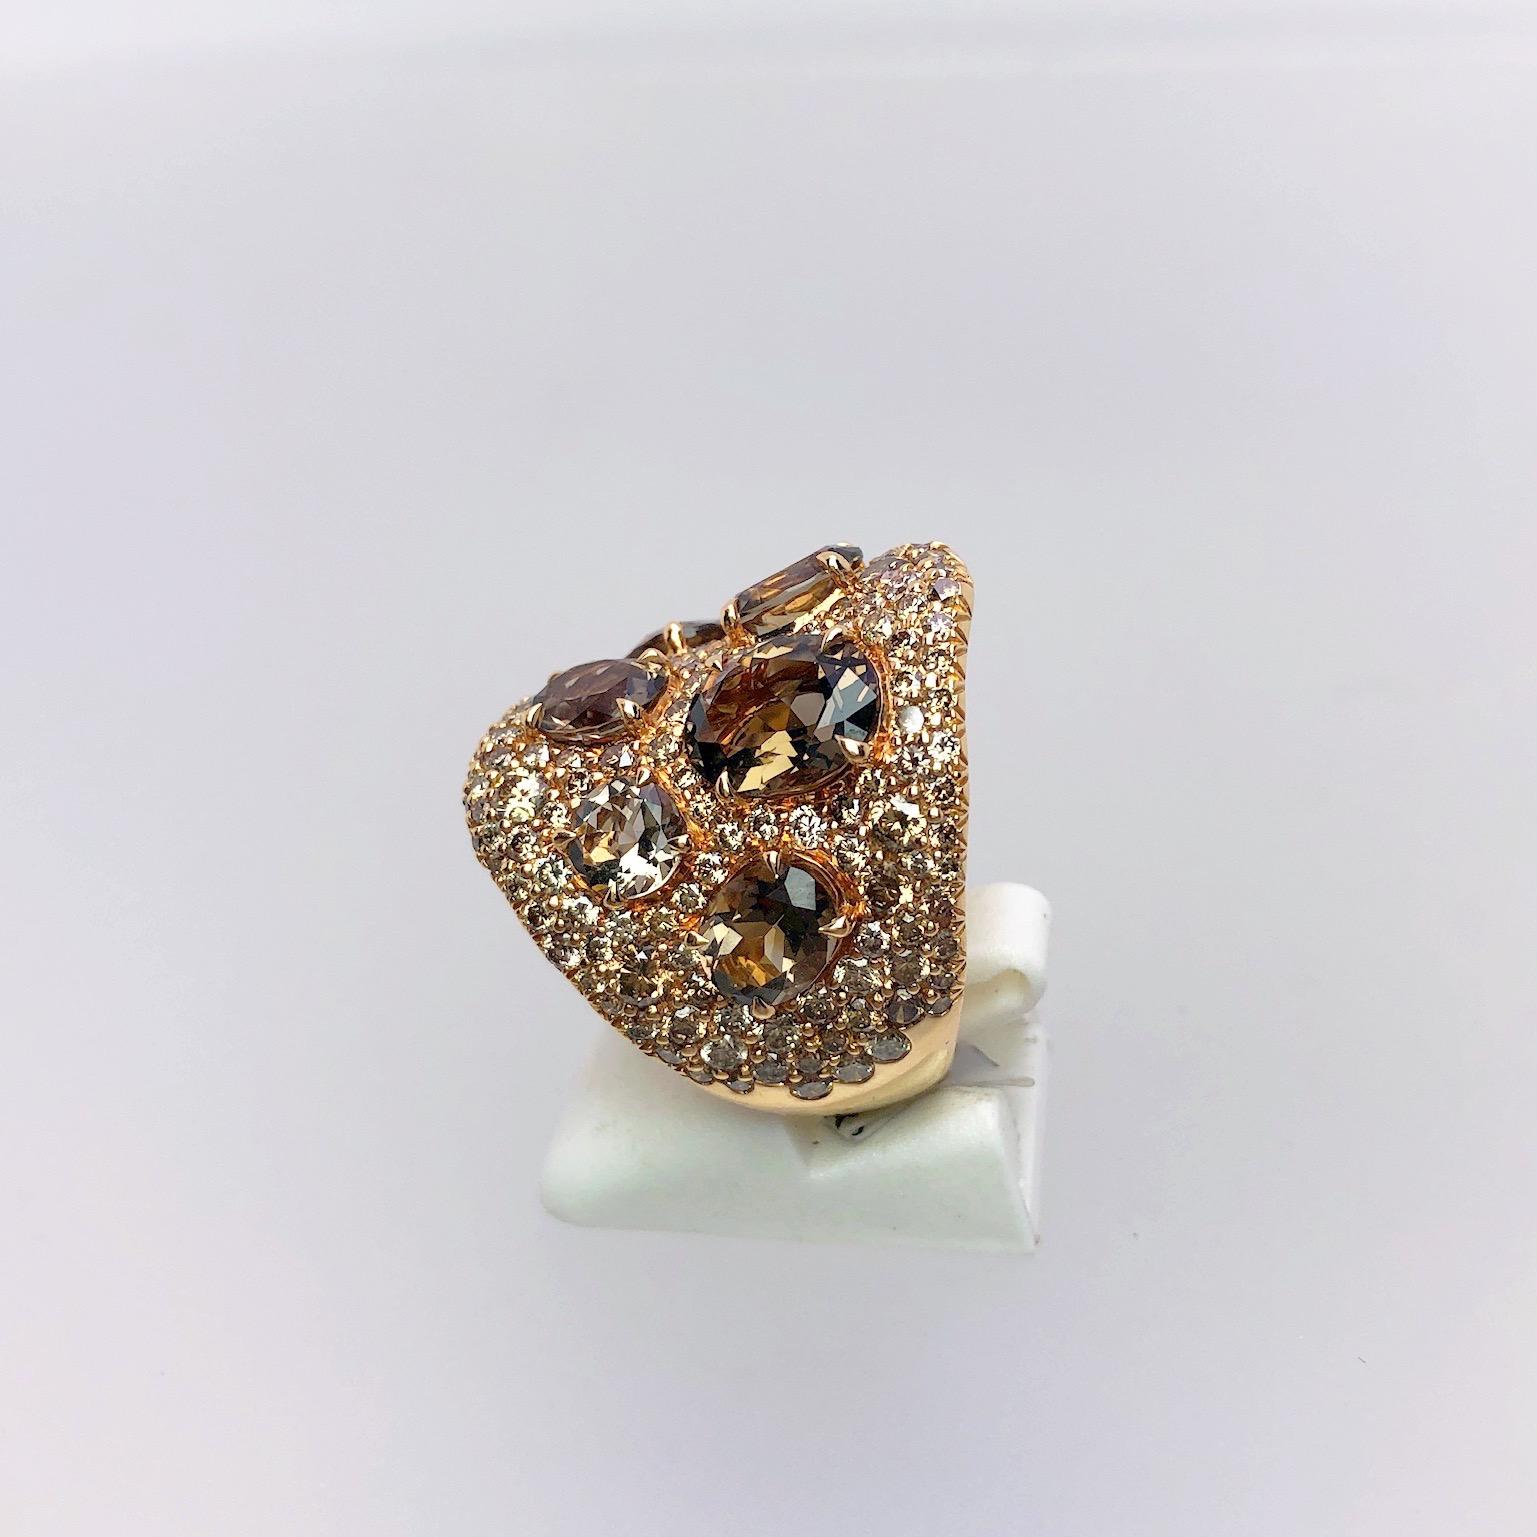 Dieser Ring aus 18 Karat Roségold ist mit braunen Diamanten besetzt. Ovale Rauchquarzsteine sind in den 23,5 mm breiten Ring eingefasst.
Braune Diamanten von insgesamt 3,51 Karat
Rauchquarz insgesamt 5,83 Karat
Ring Größe 7.5
Gestempelt